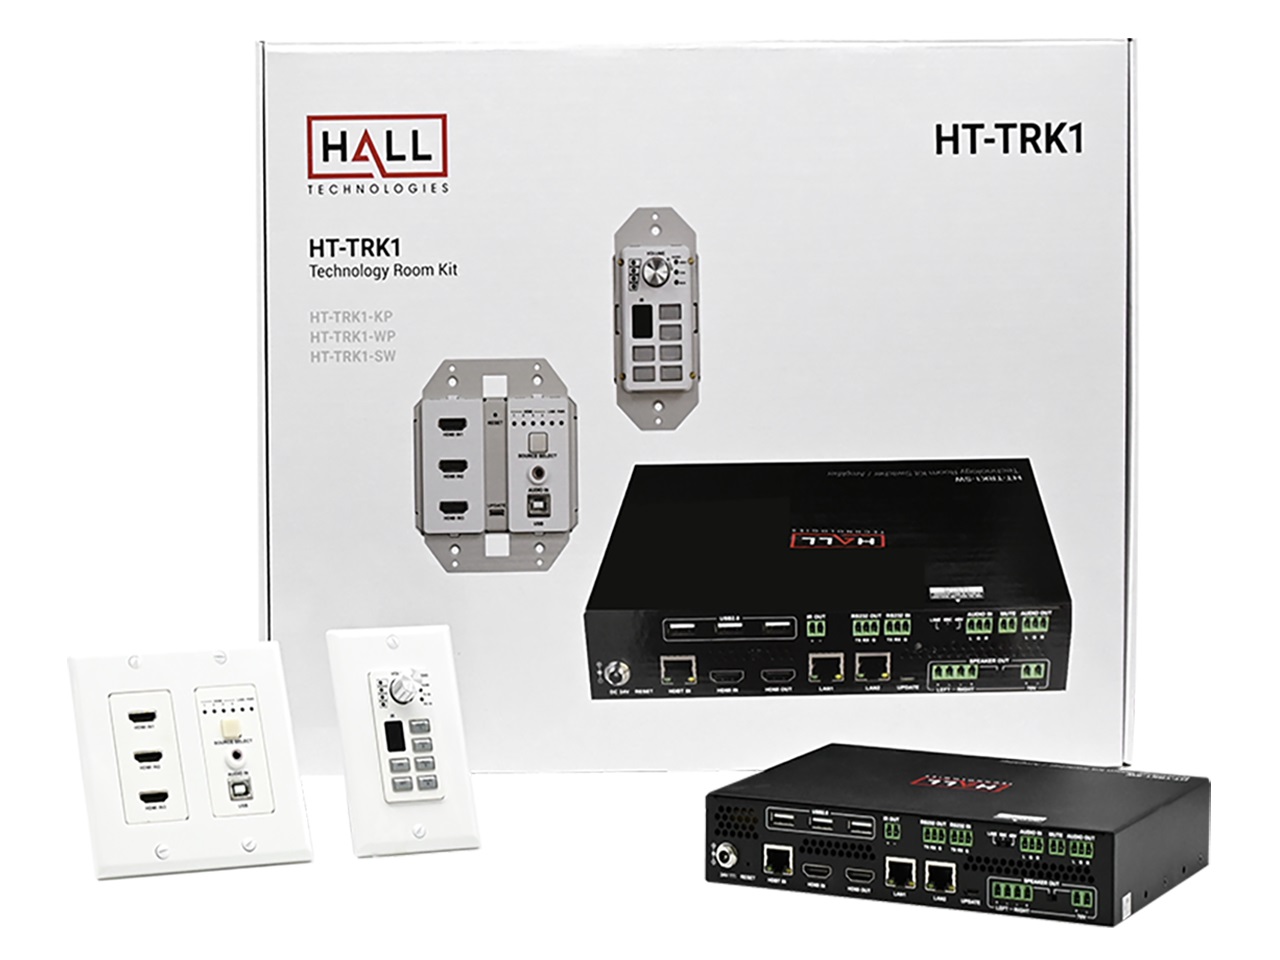 Hall Technologies HT-TRK1 Apollo Technology Room Kit